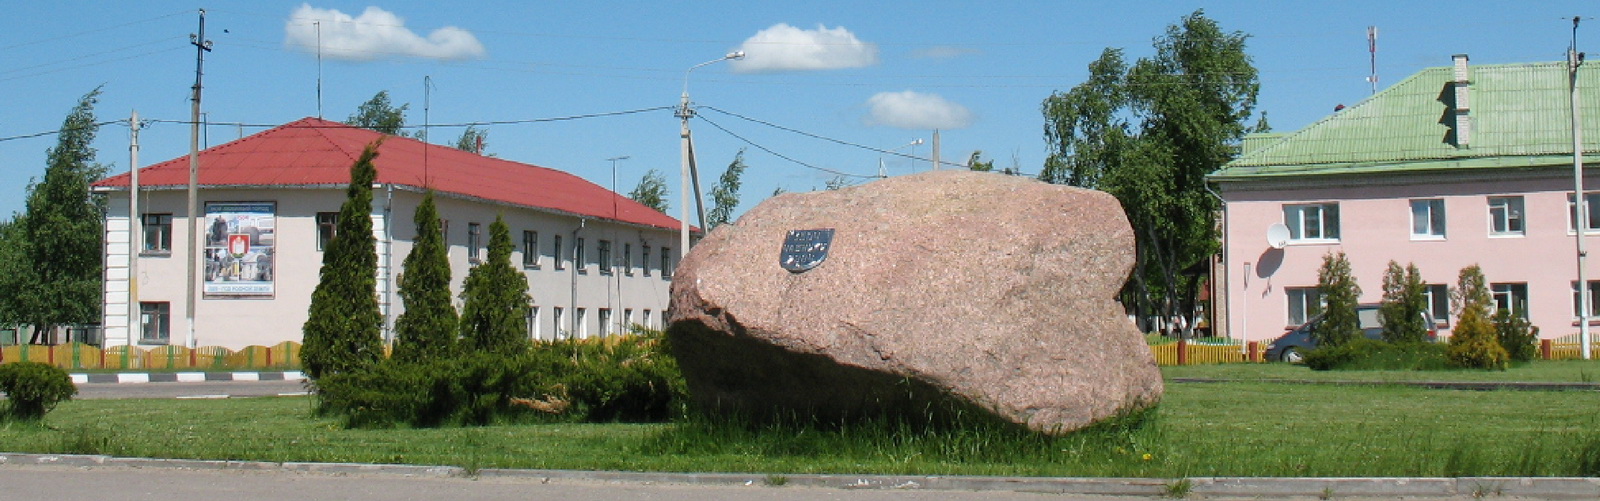 Камень установленный в честь 500-летия г.Чашники